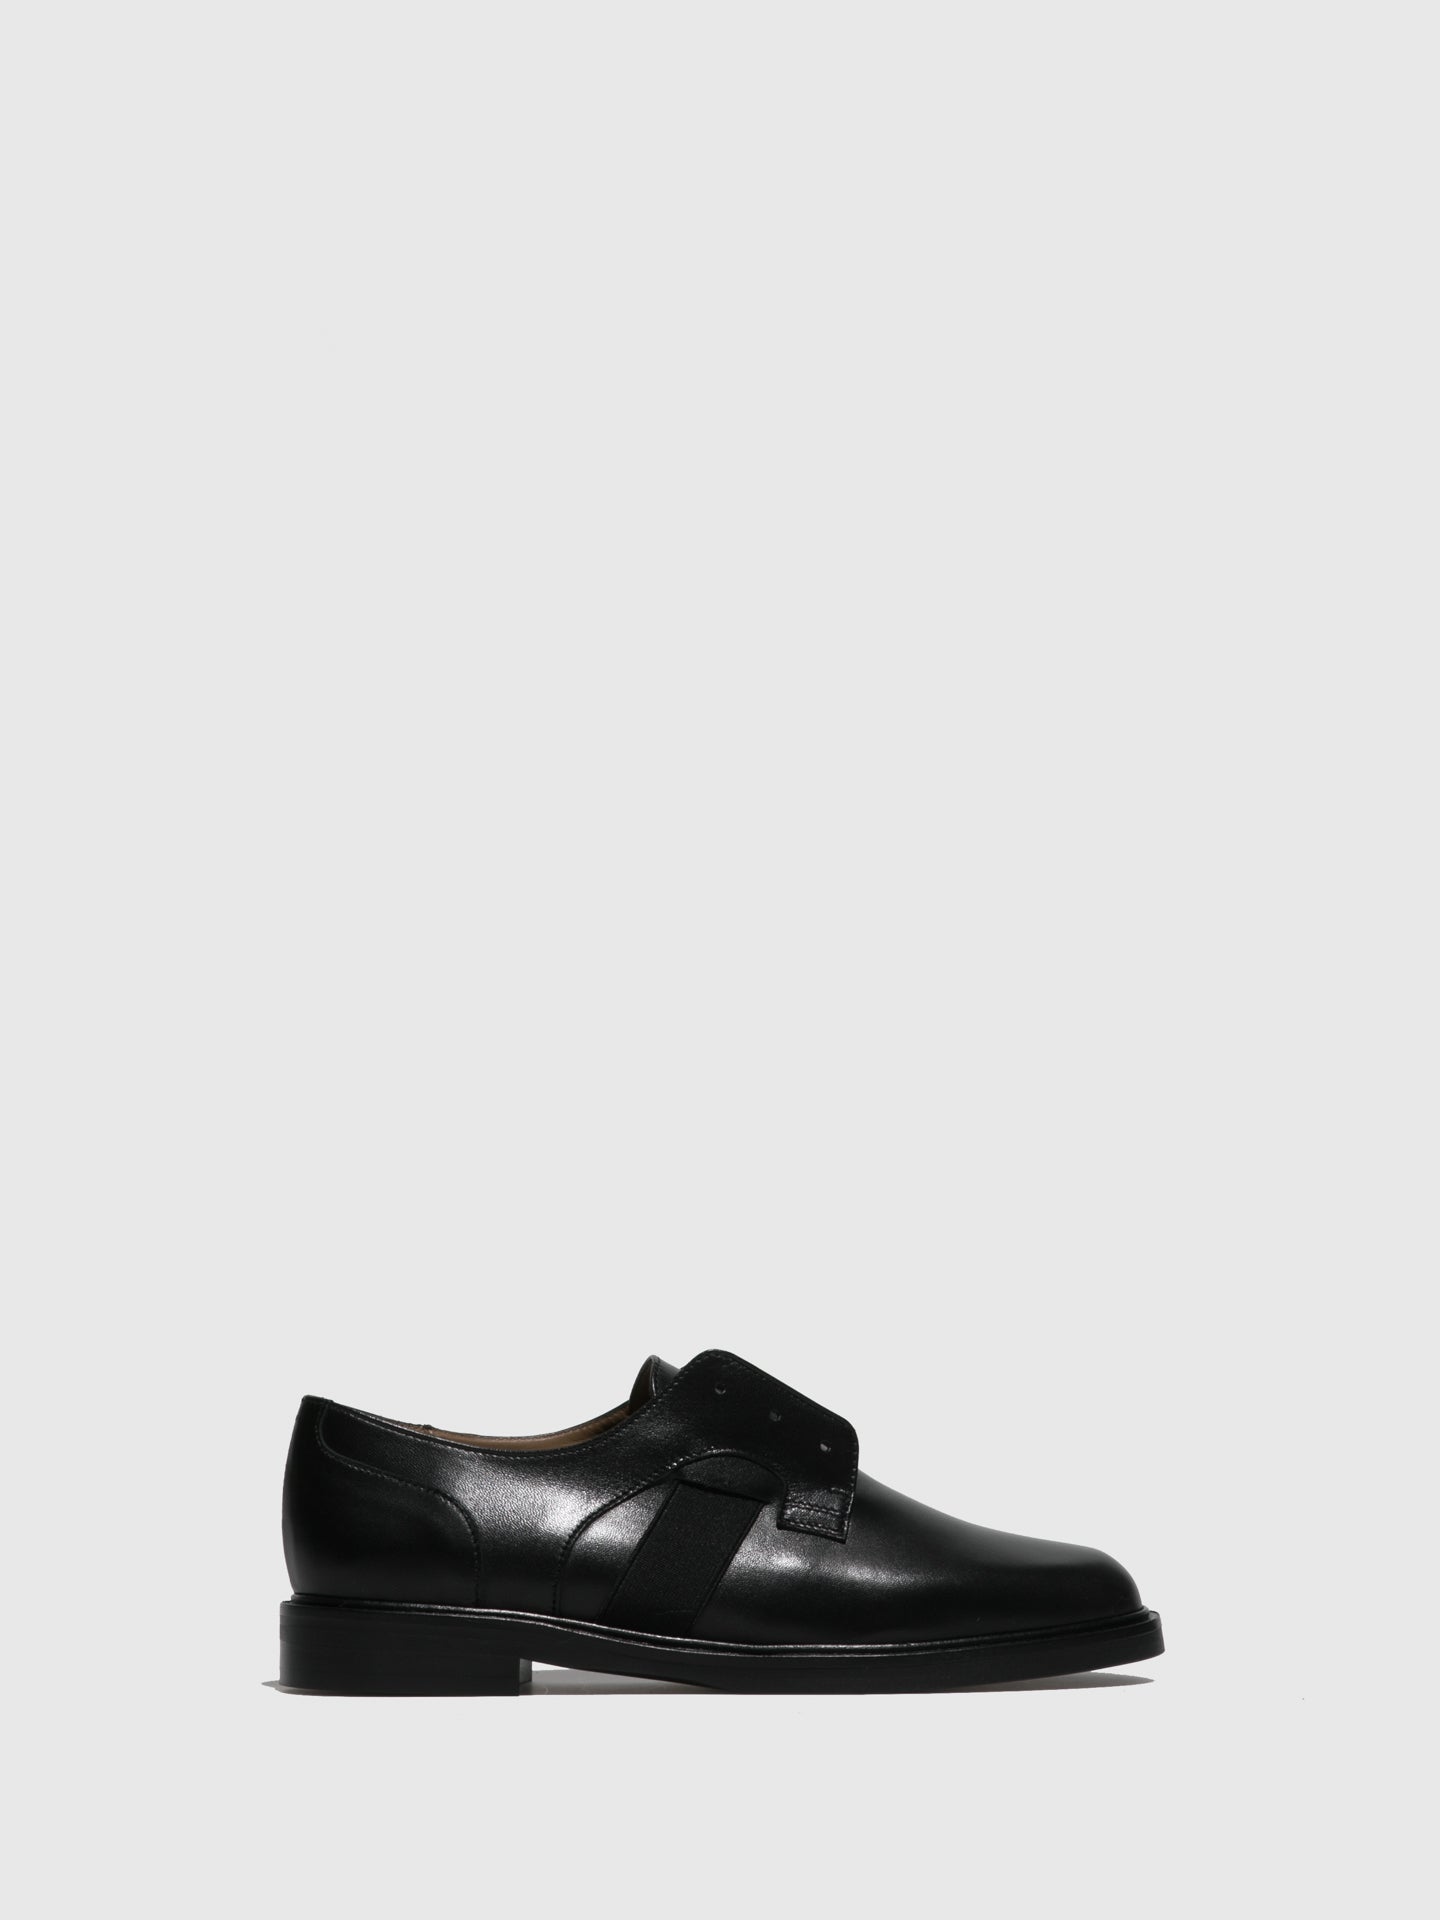 JJ Heitor Black Slip-on Shoes